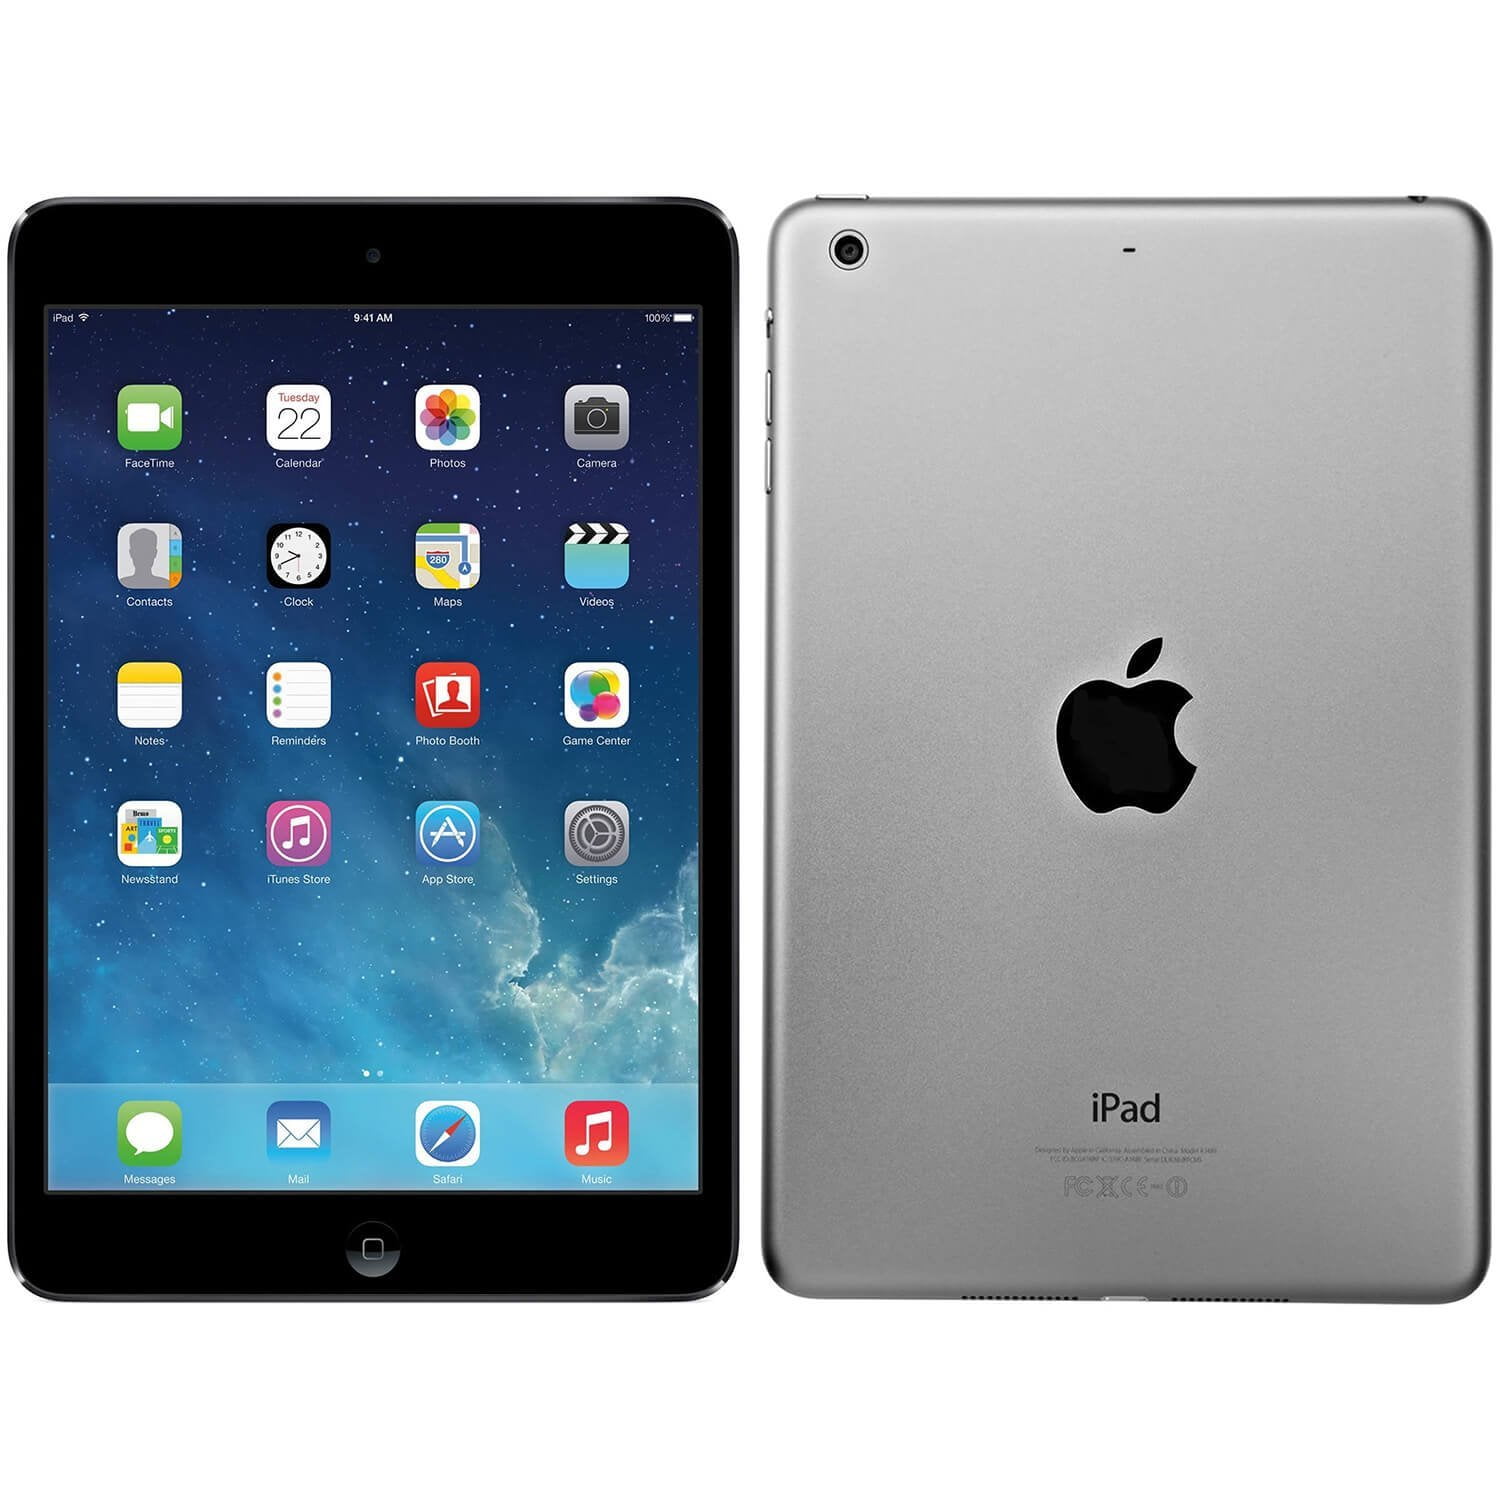 Restored Apple iPad Air [1st Generation] 16GB WiFi Space Gray (Refurbished) - Walmart.com